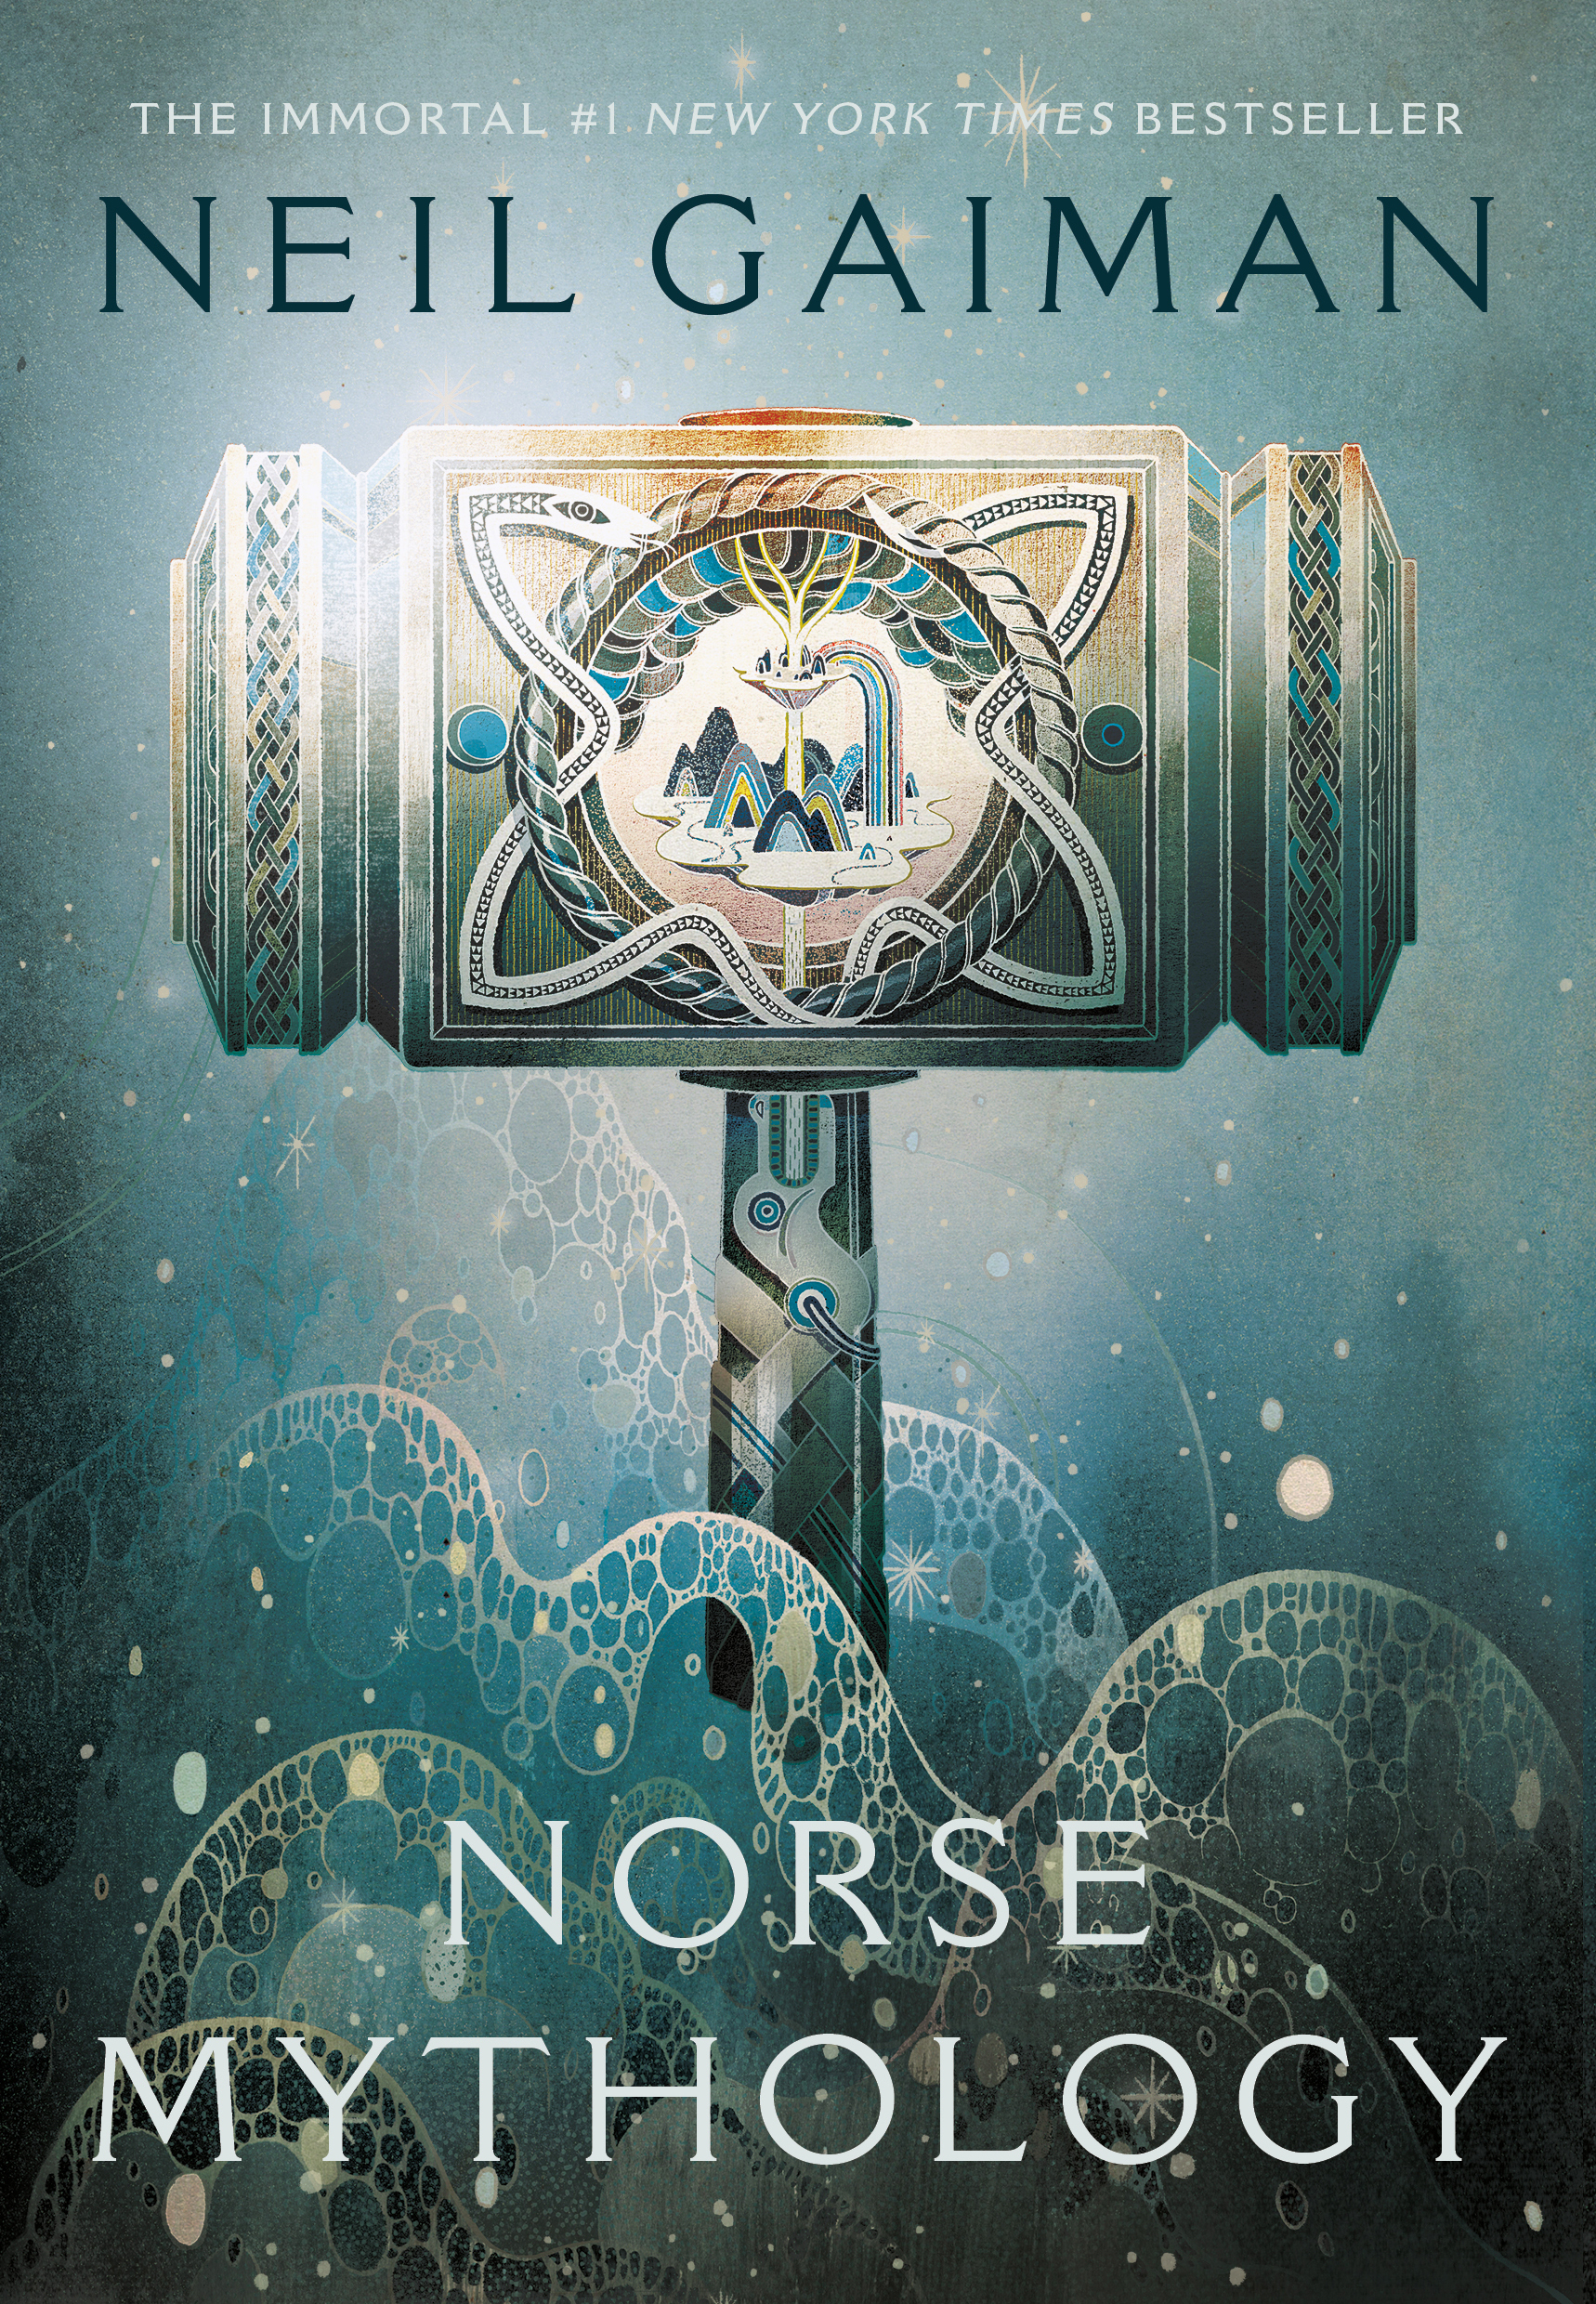 Neil Gaiman: Norse Mythology (Hardcover, 2017, W. W. Norton & Company)